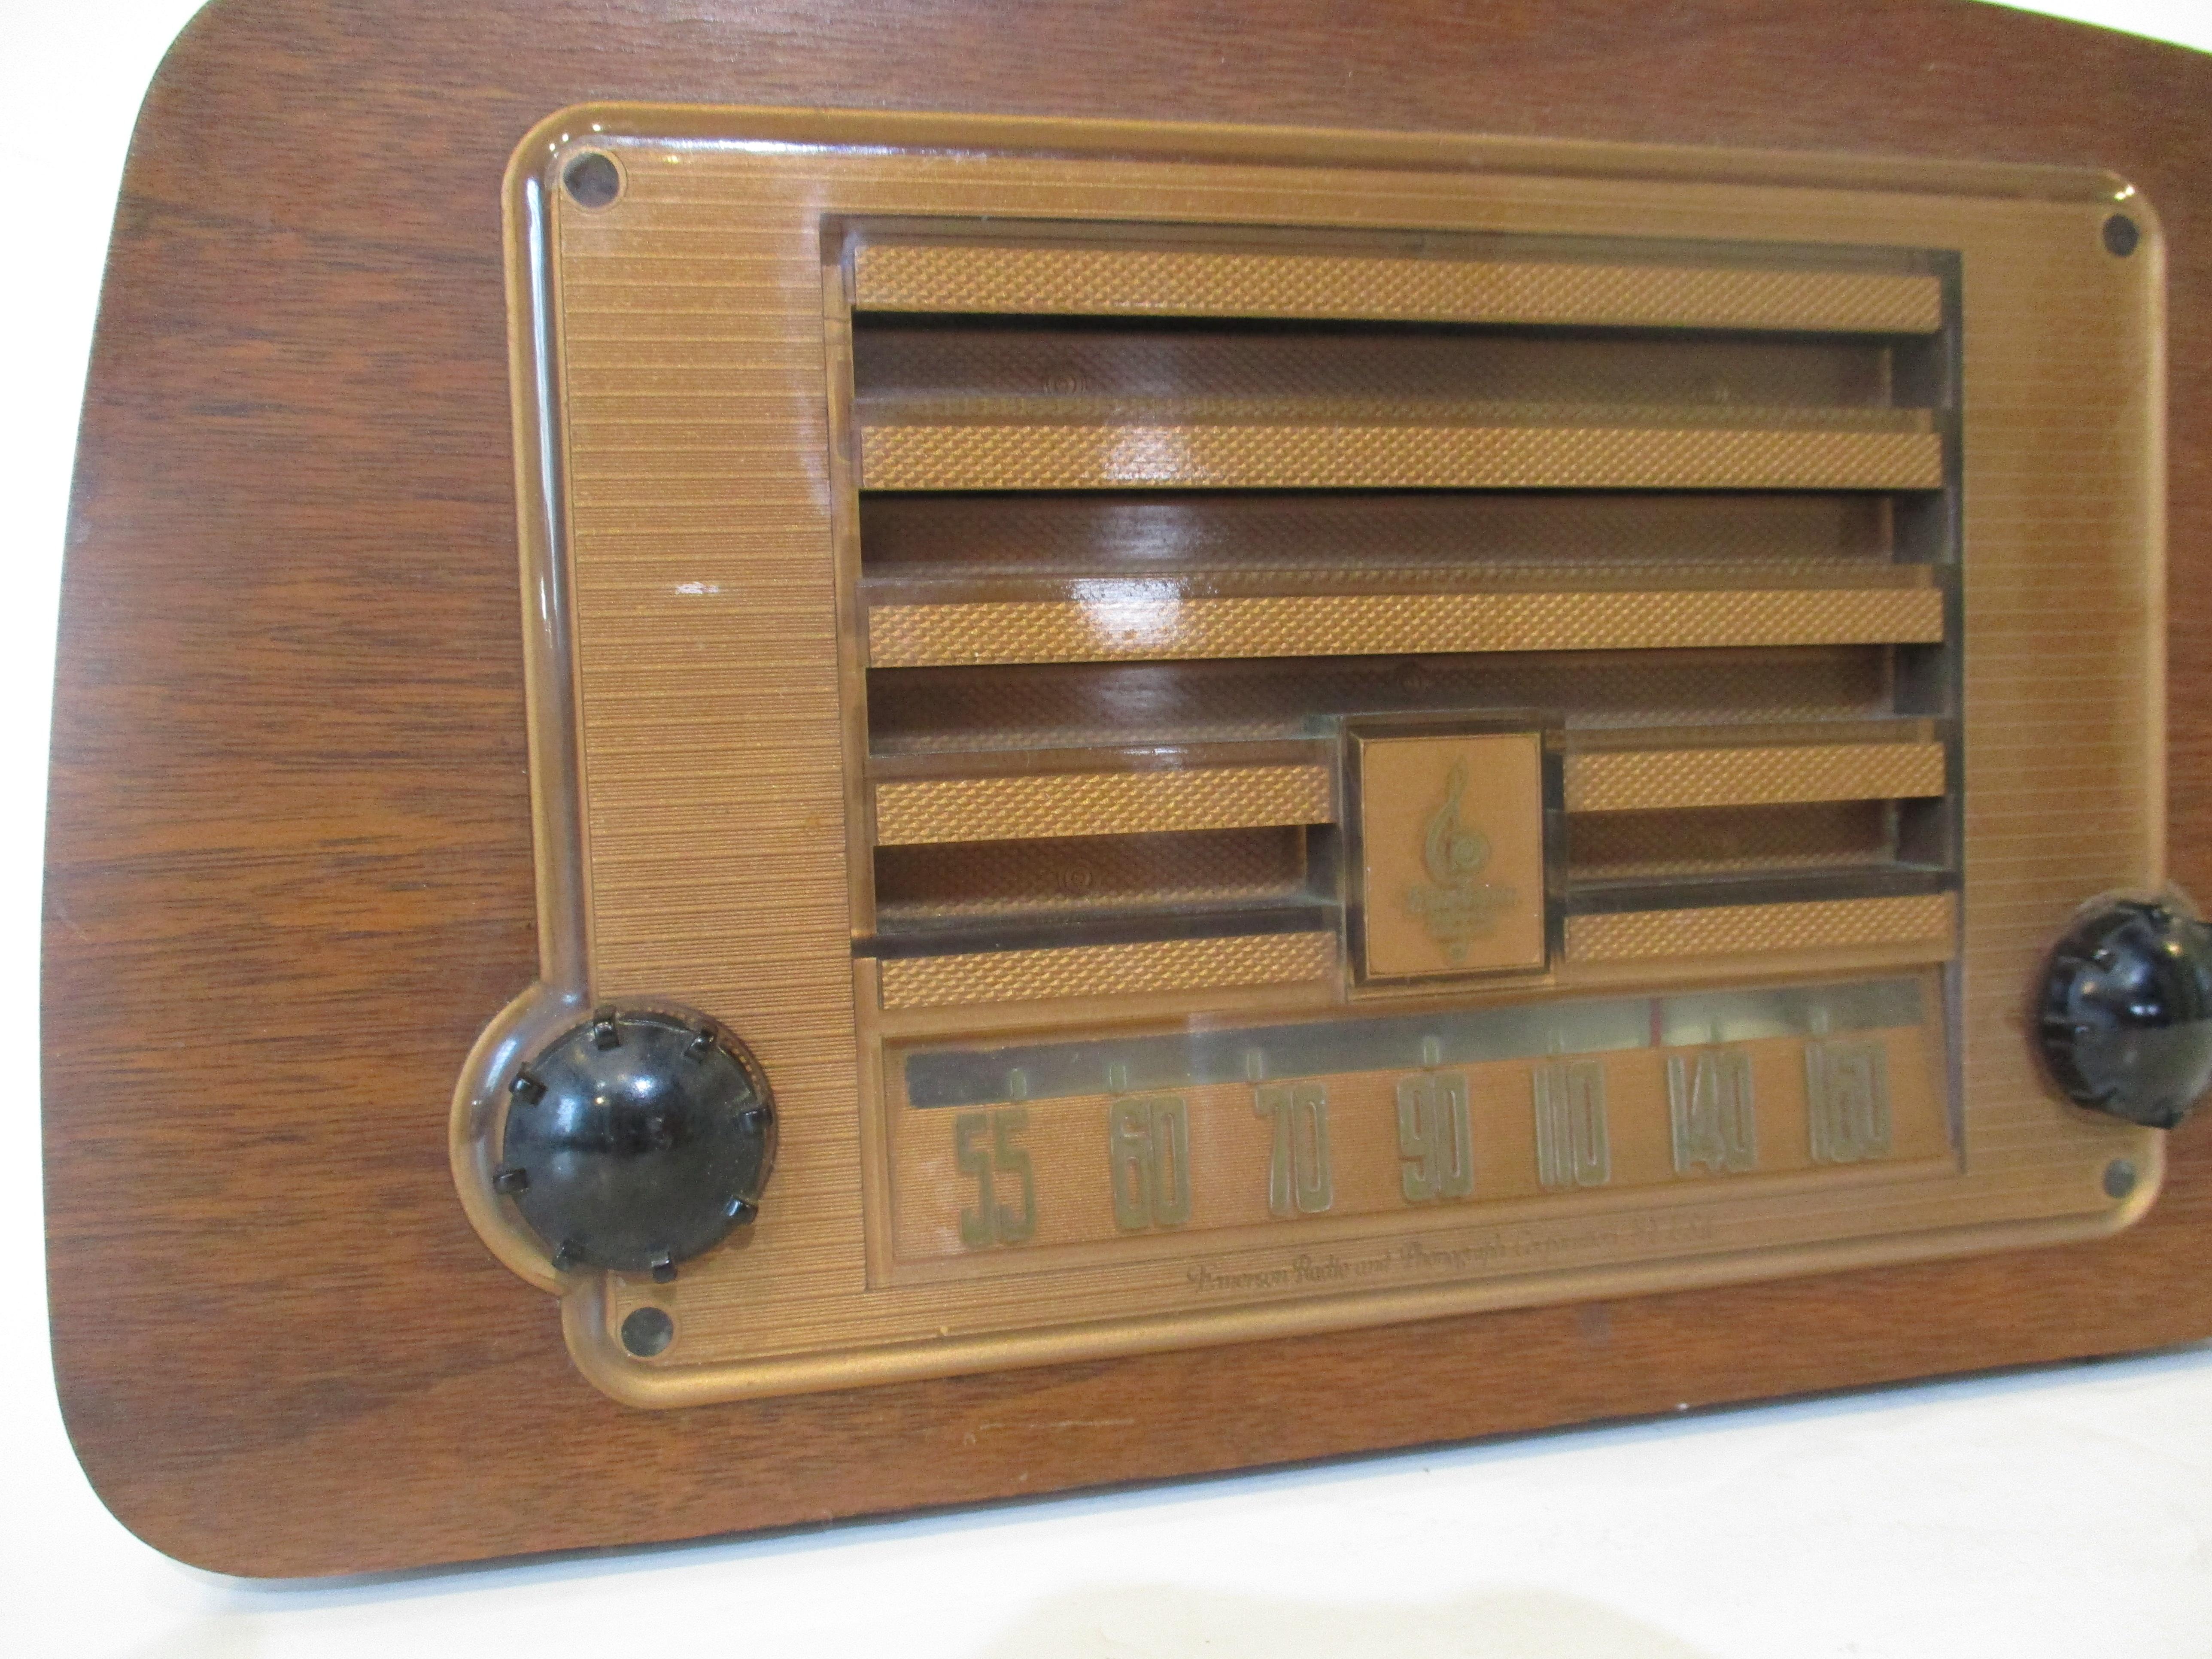 1940 radio